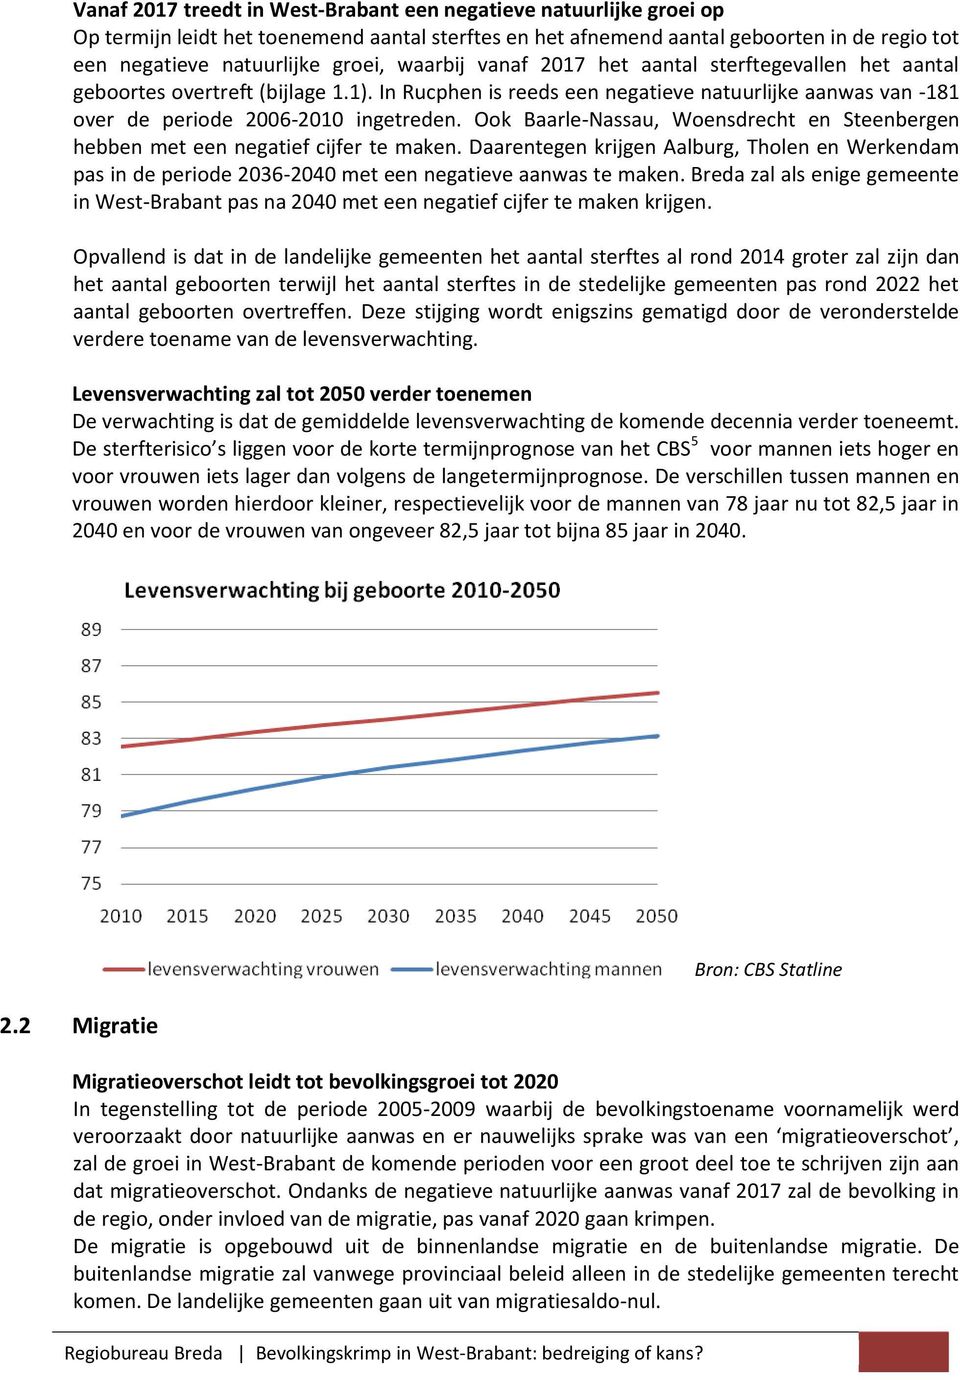 Ook Baarle-Nassau, Woensdrecht en Steenbergen hebben met een negatief cijfer te maken. Daarentegen krijgen Aalburg, Tholen en Werkendam pas in de periode 2036-2040 met een negatieve aanwas te maken.